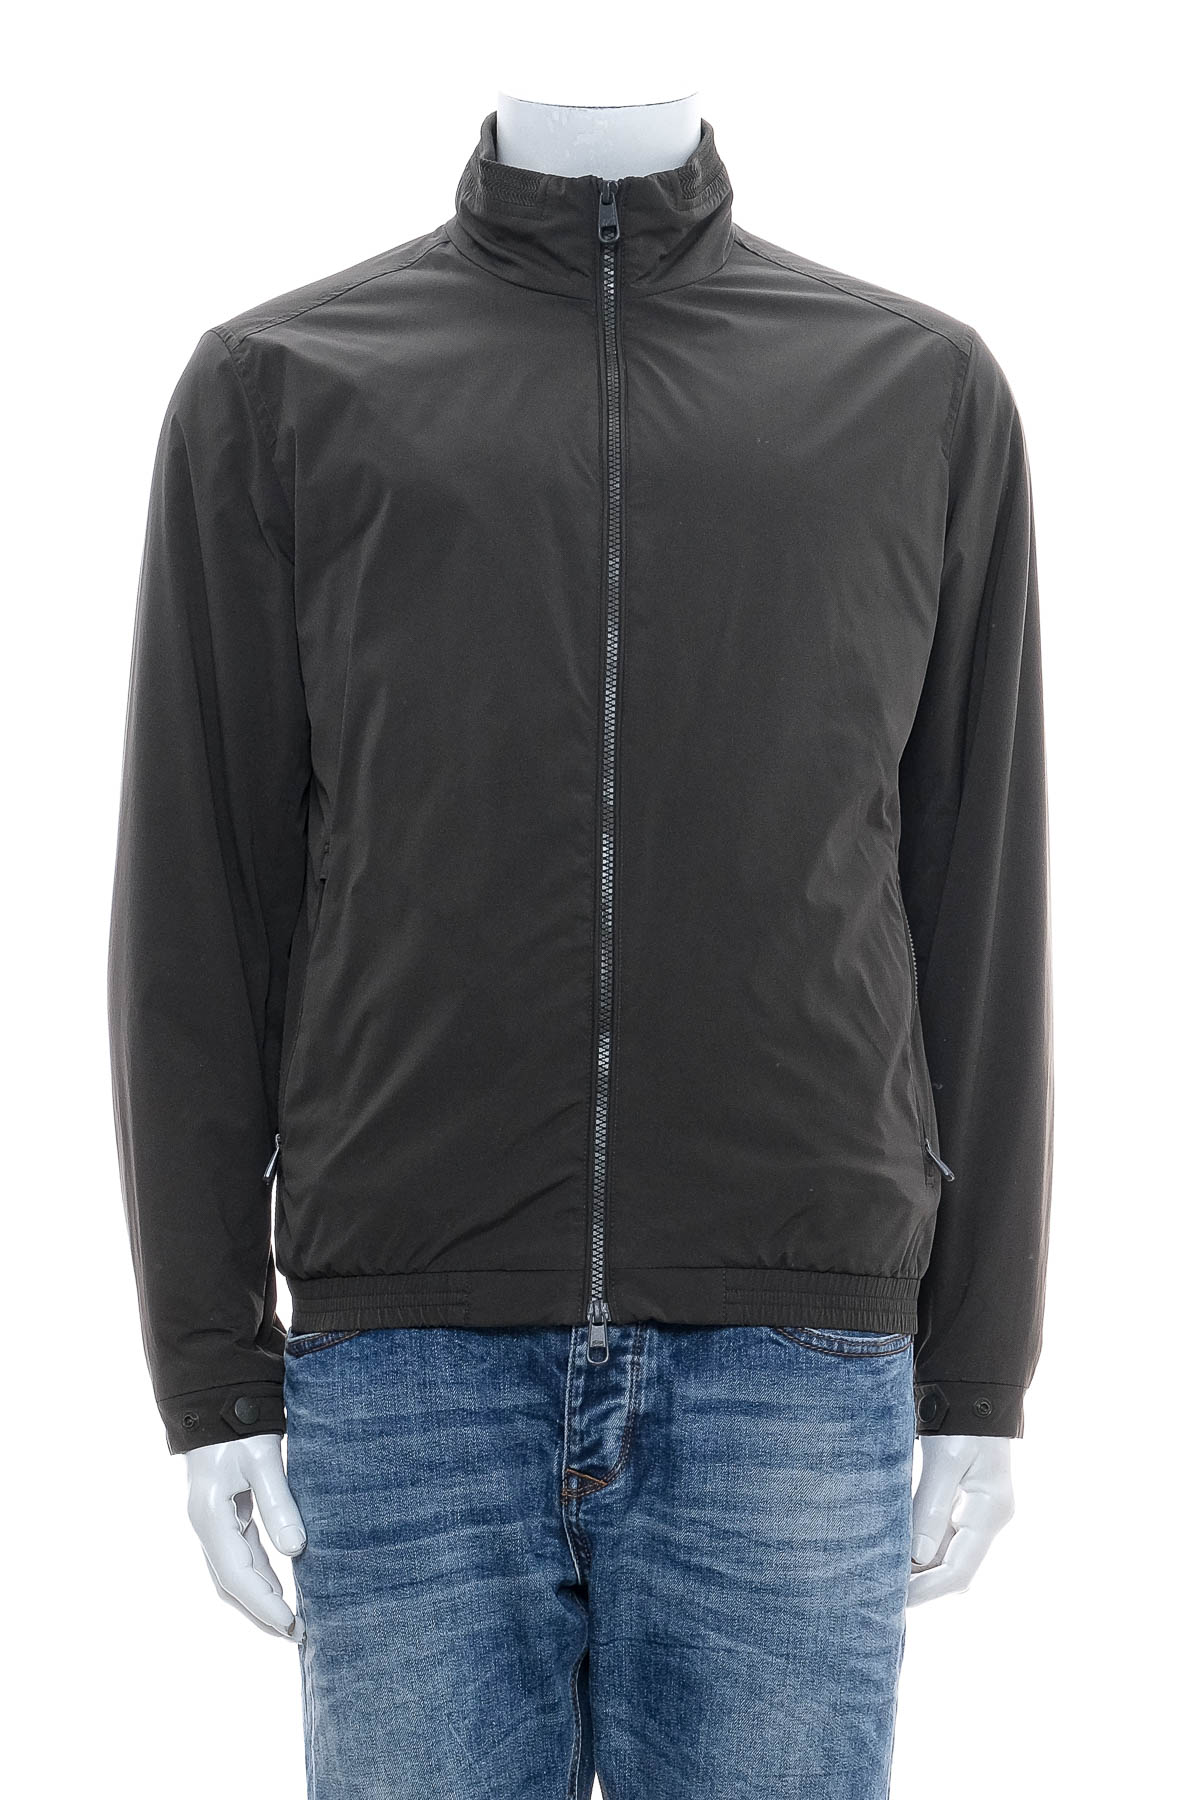 Men's jacket - Pierre Cardin - 0